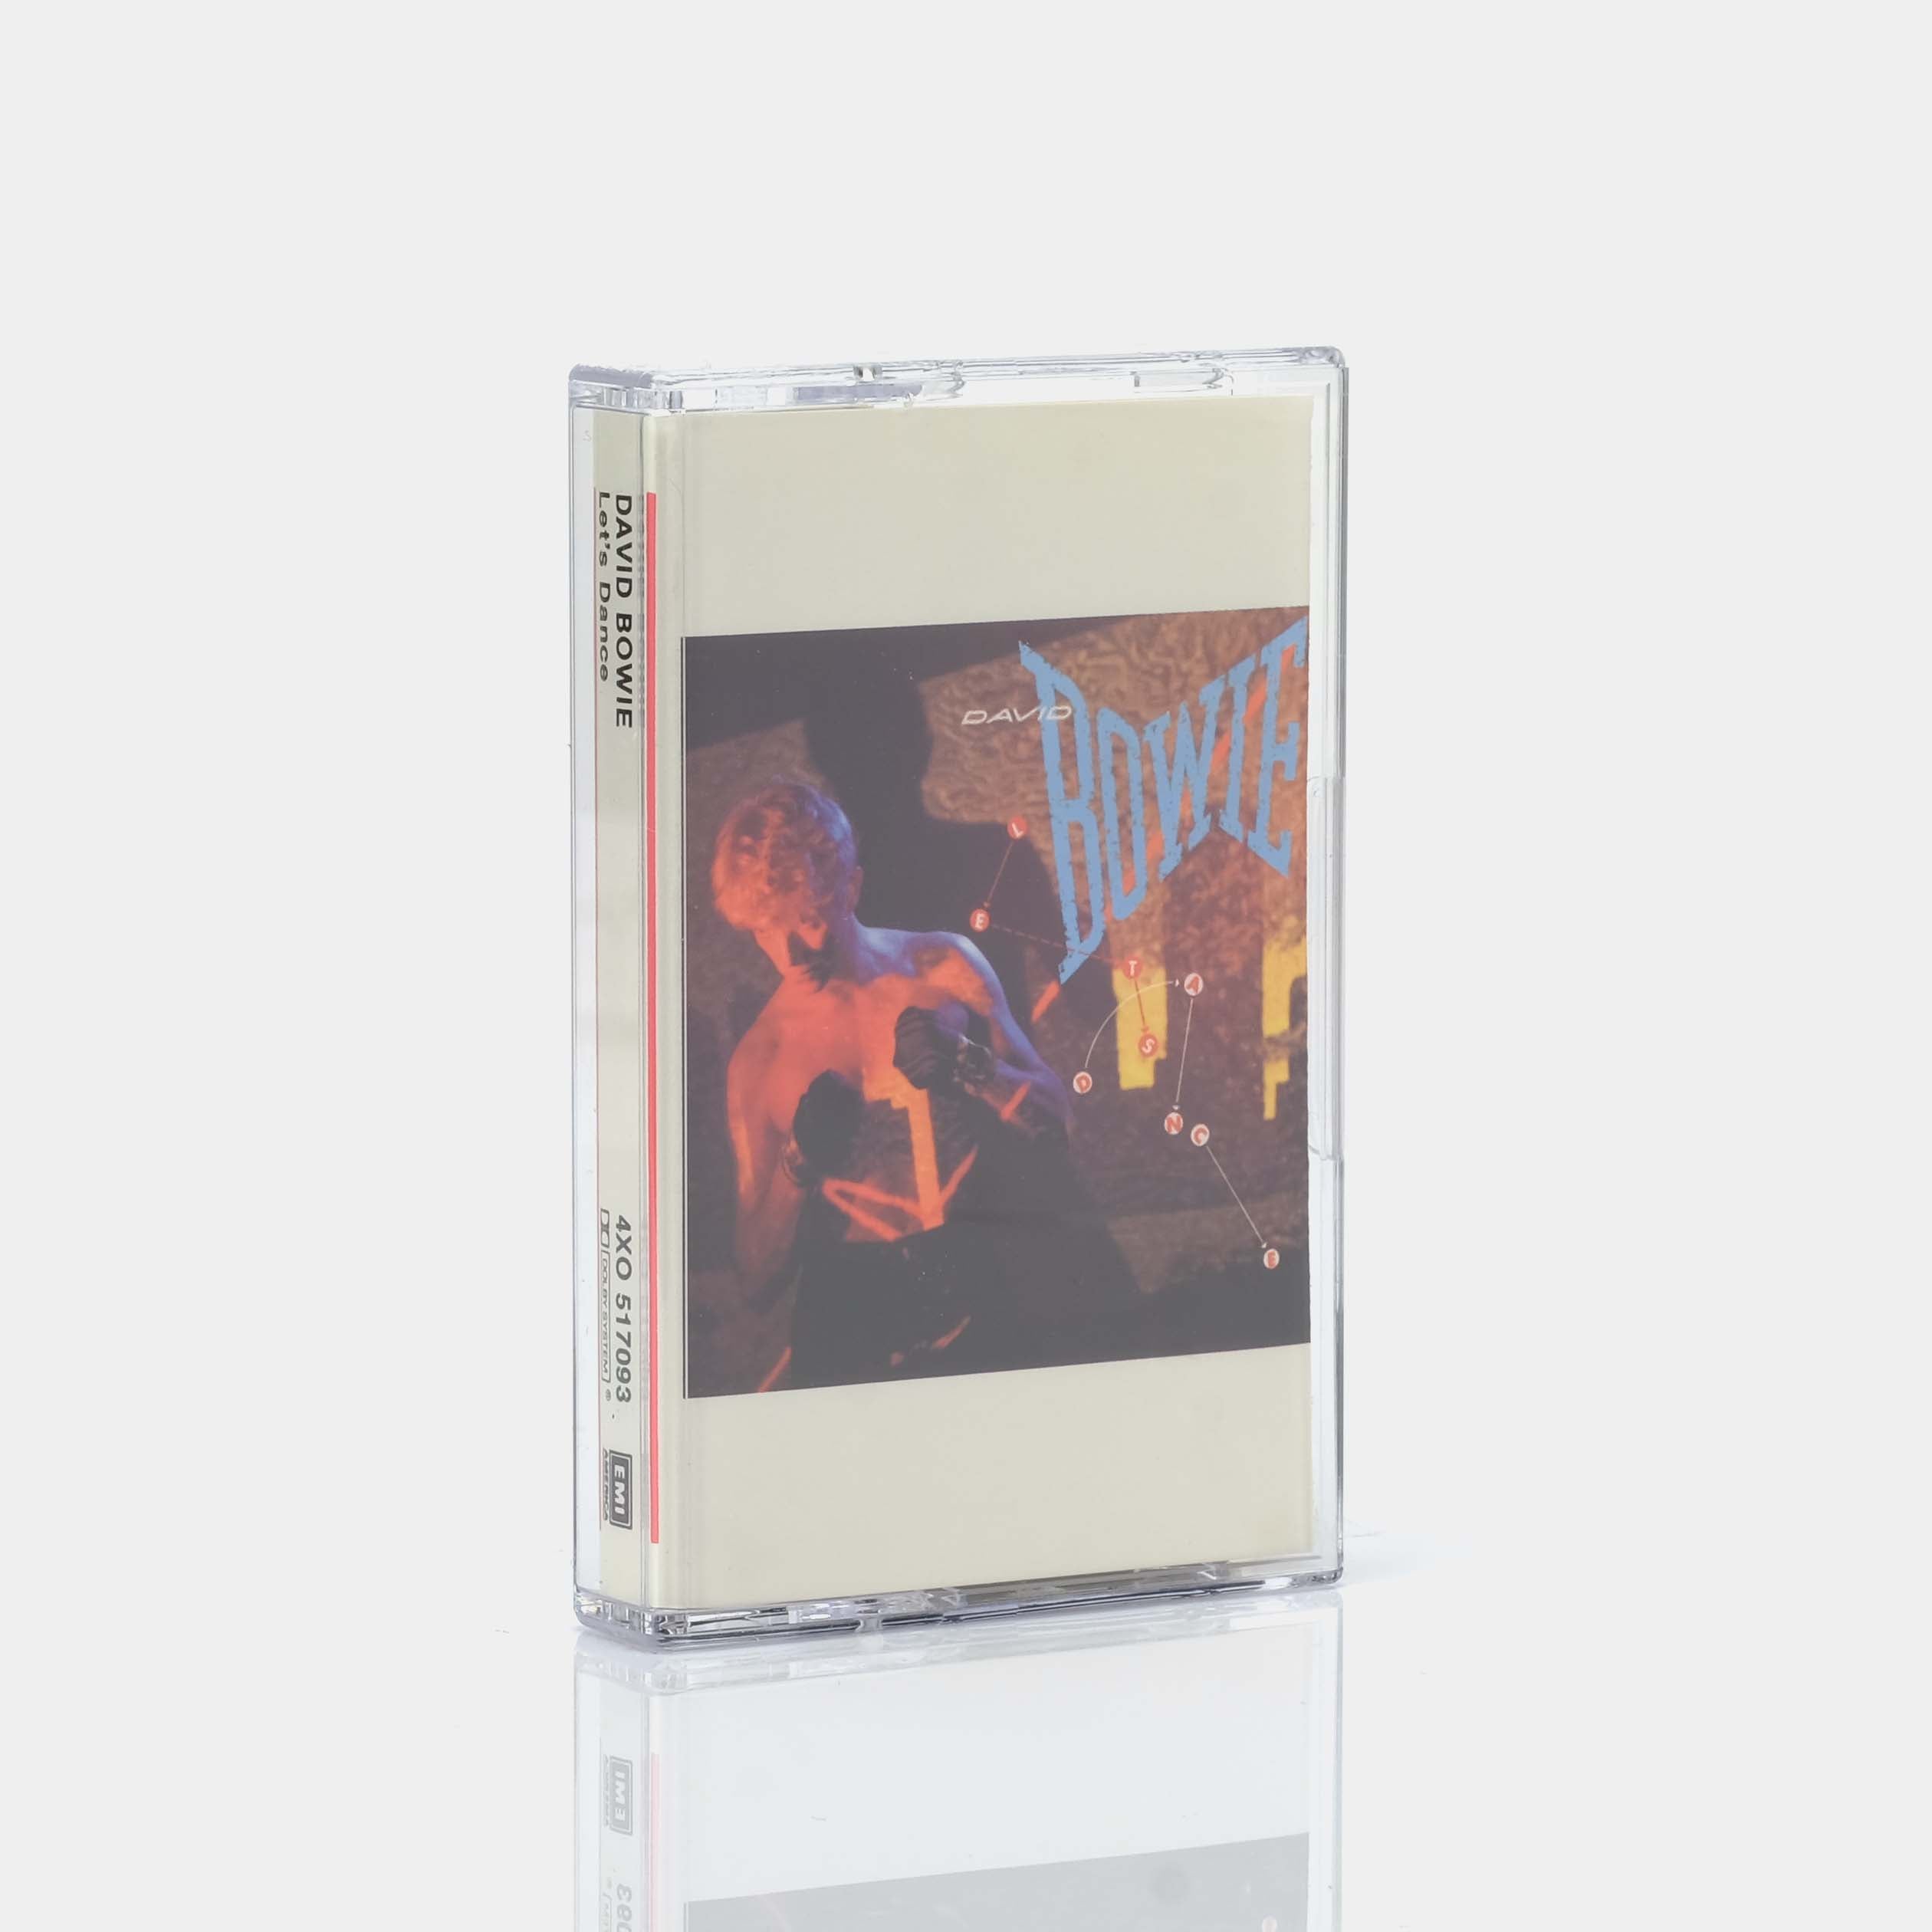 David Bowie - Let's Dance Cassette Tape